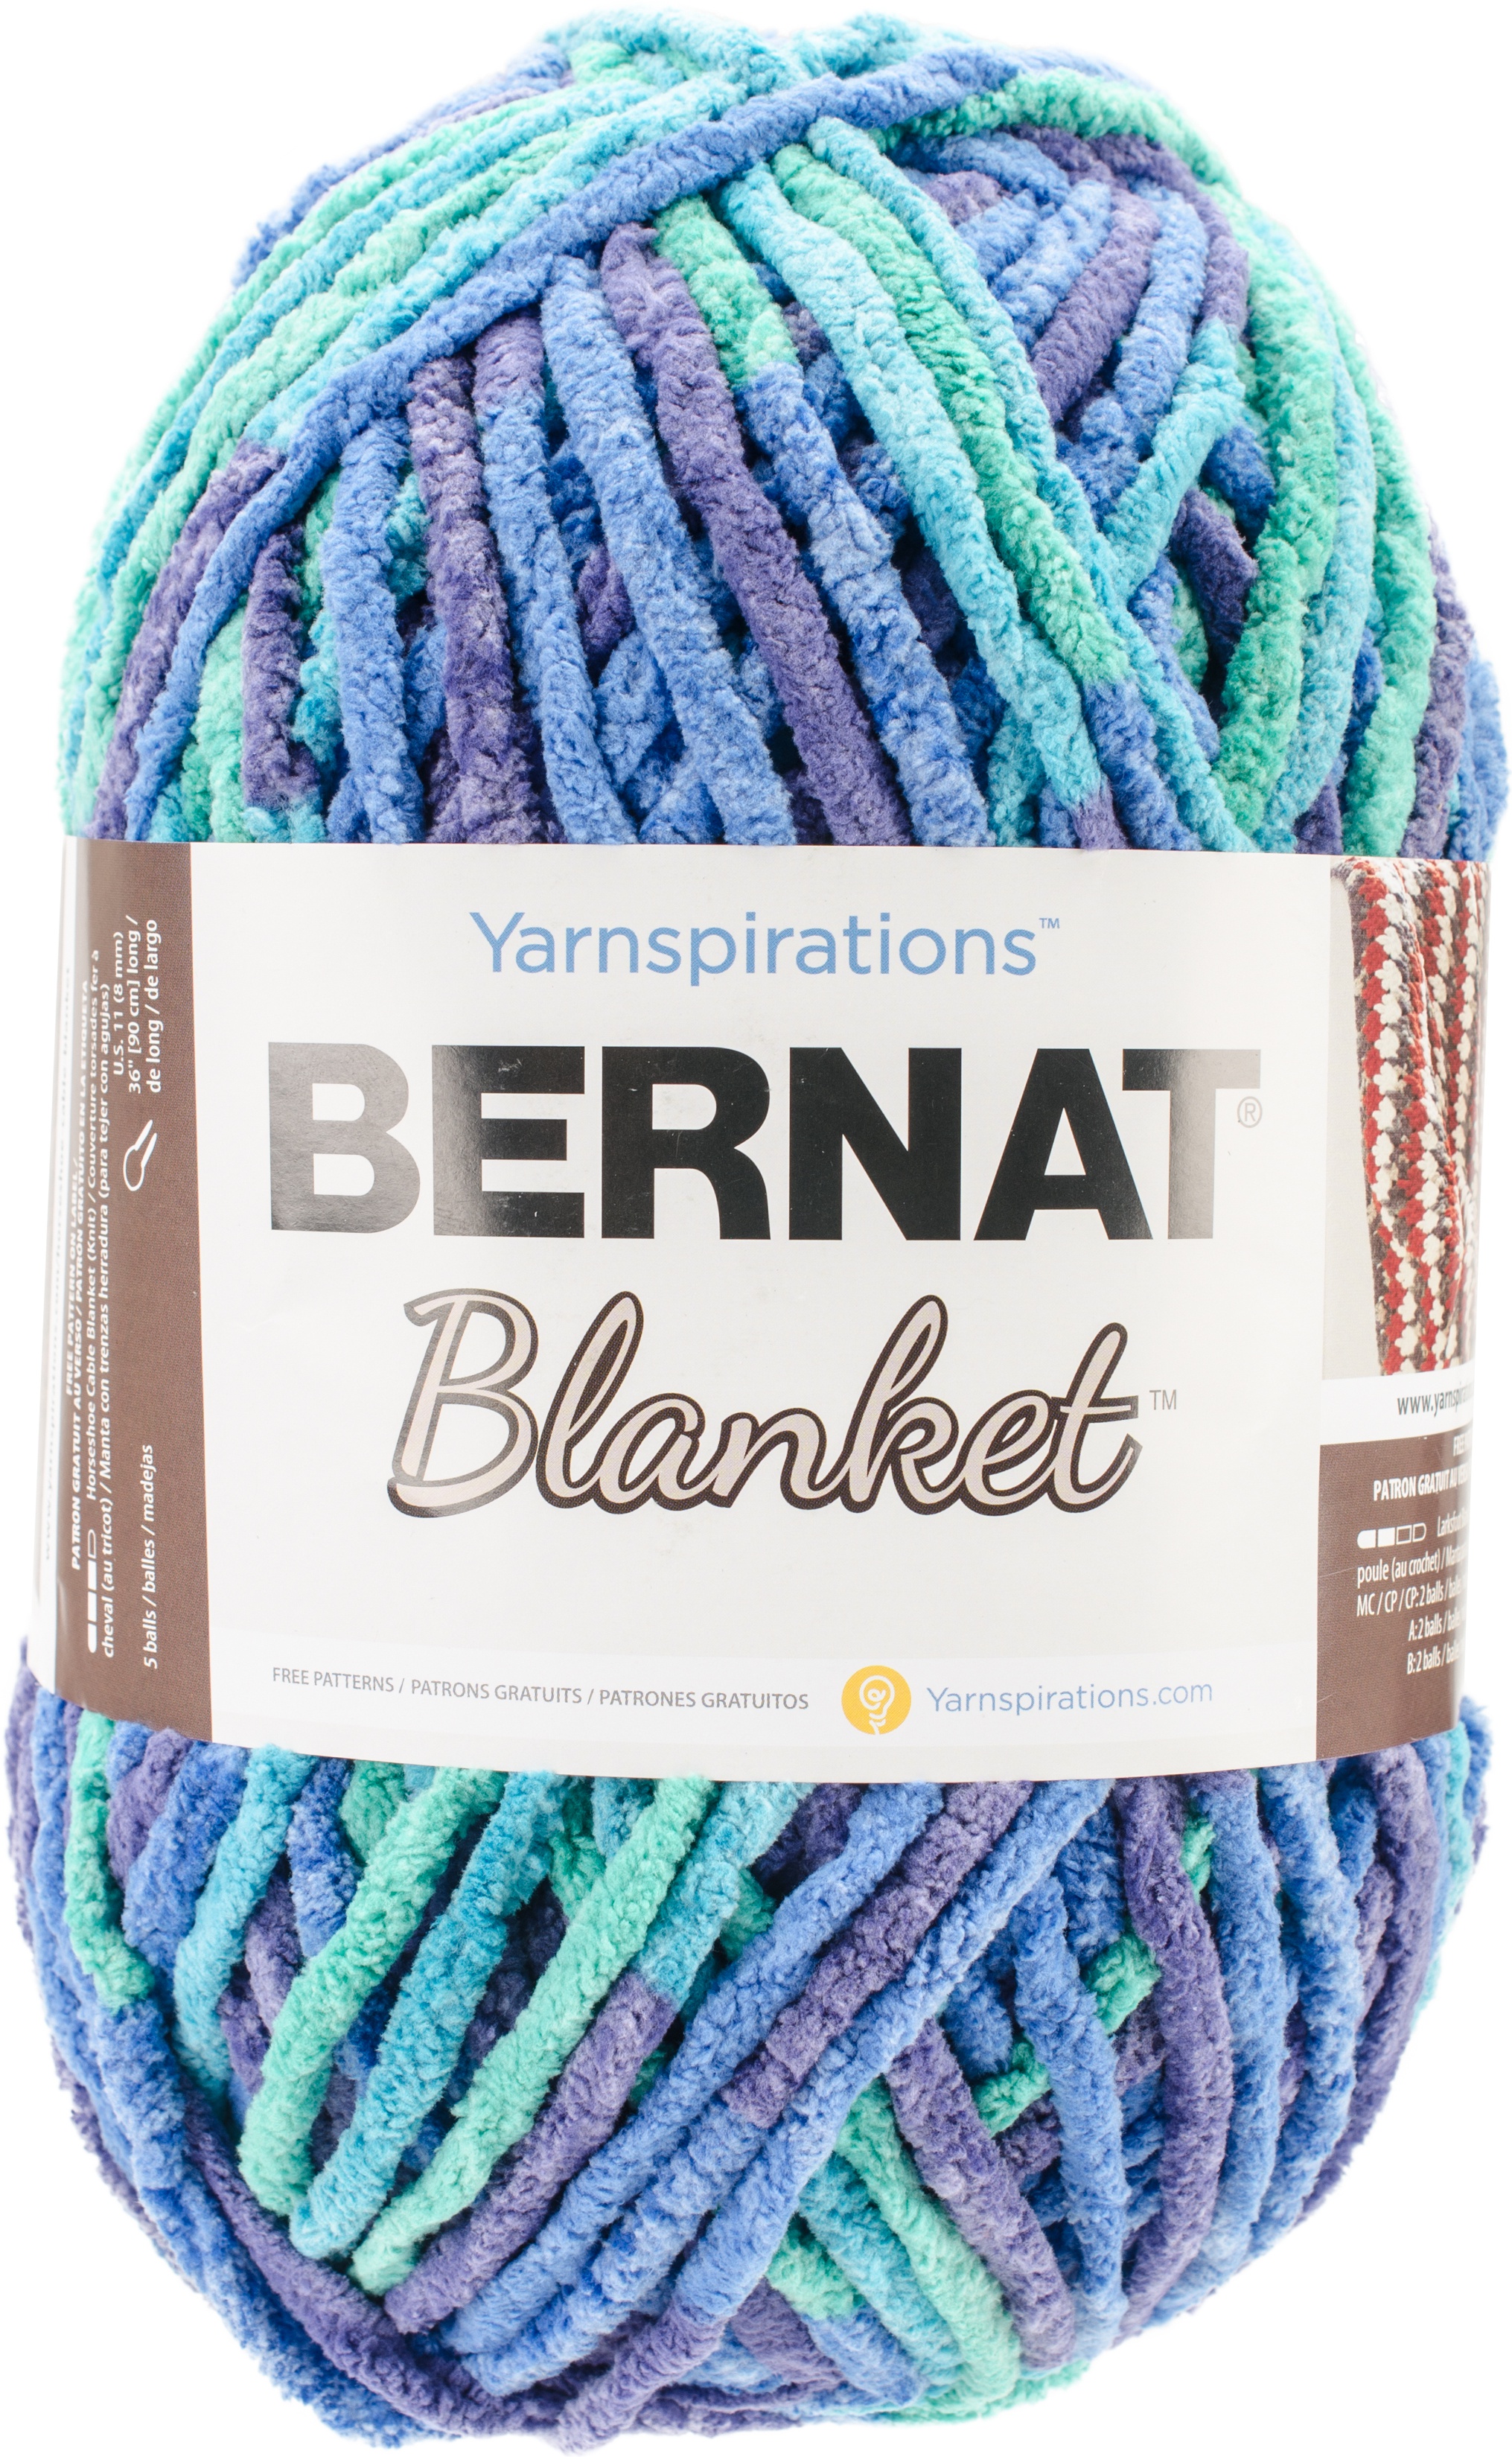 Bernat Blanket Ocean Shades Yarn 2 Pack of 300g/10.5oz Polyester 6 Super  Bulky - 220 Yards Knitting/Crochet